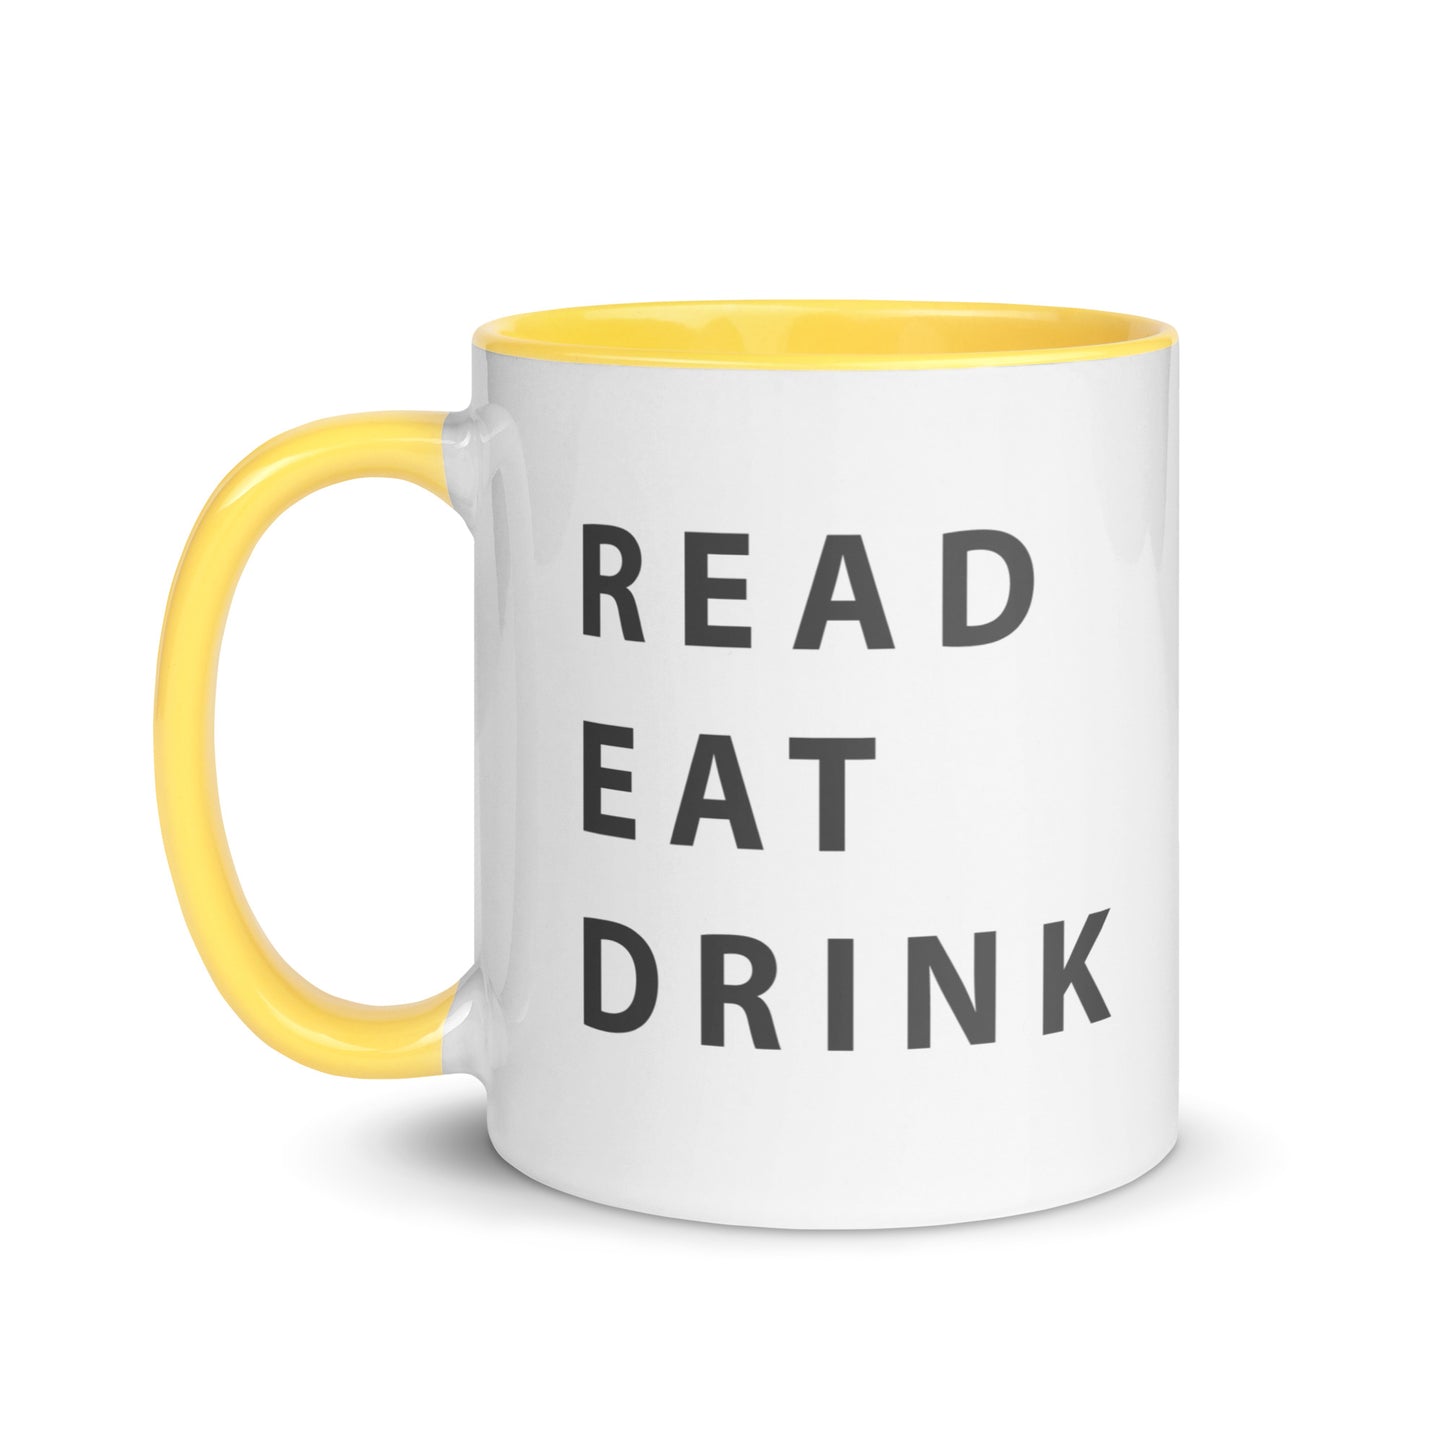 Read. Eat. Drink. Mug with Color Inside - 11 fl oz